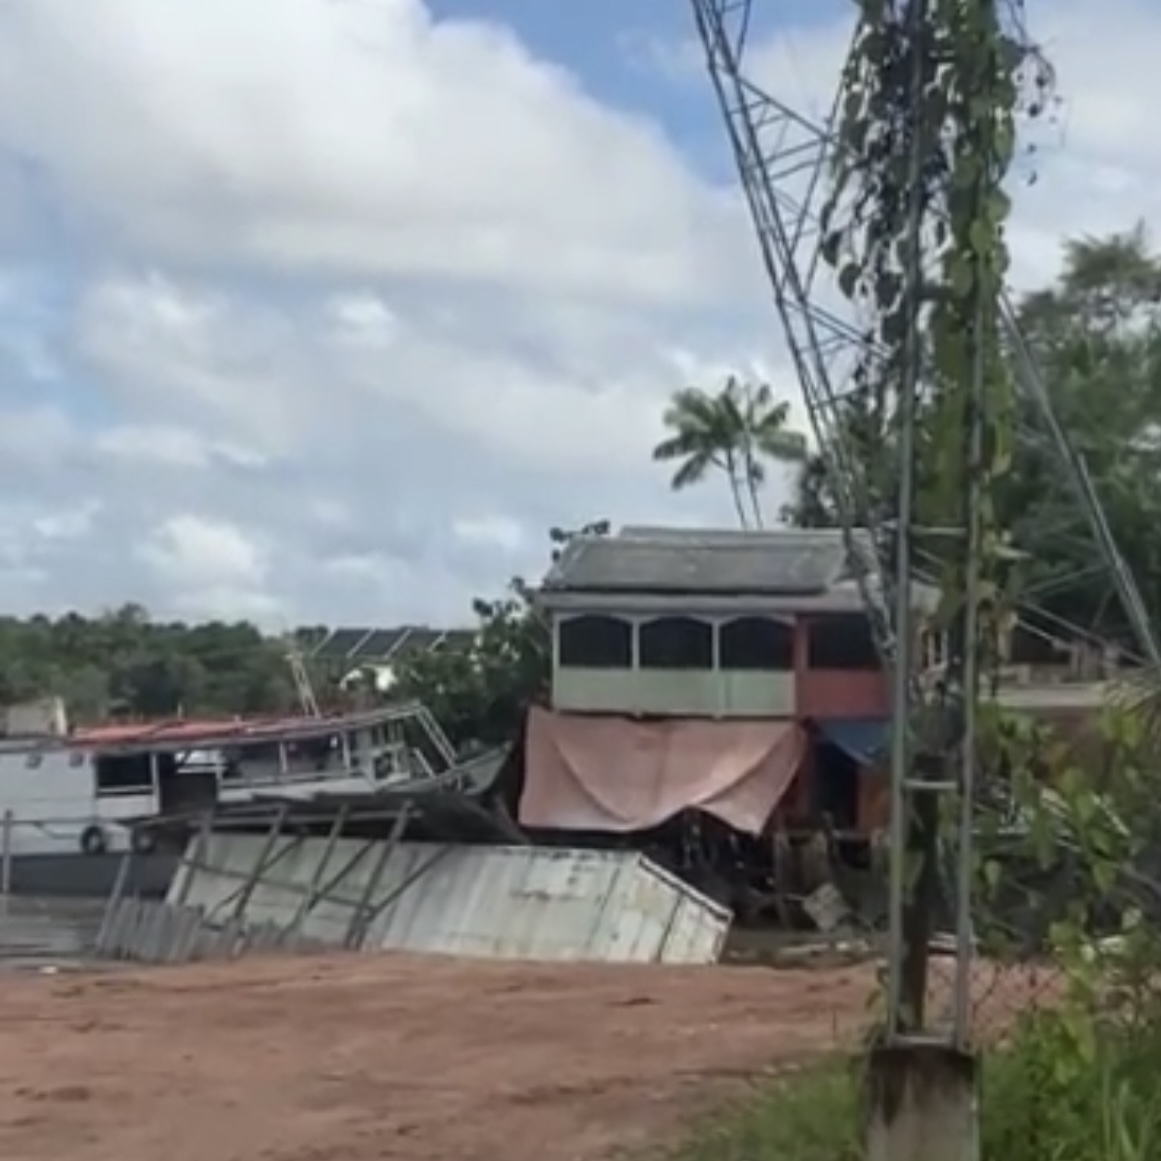 Casas e antena de energia tombam por causa de erosão neste domingo em Abaetetuba